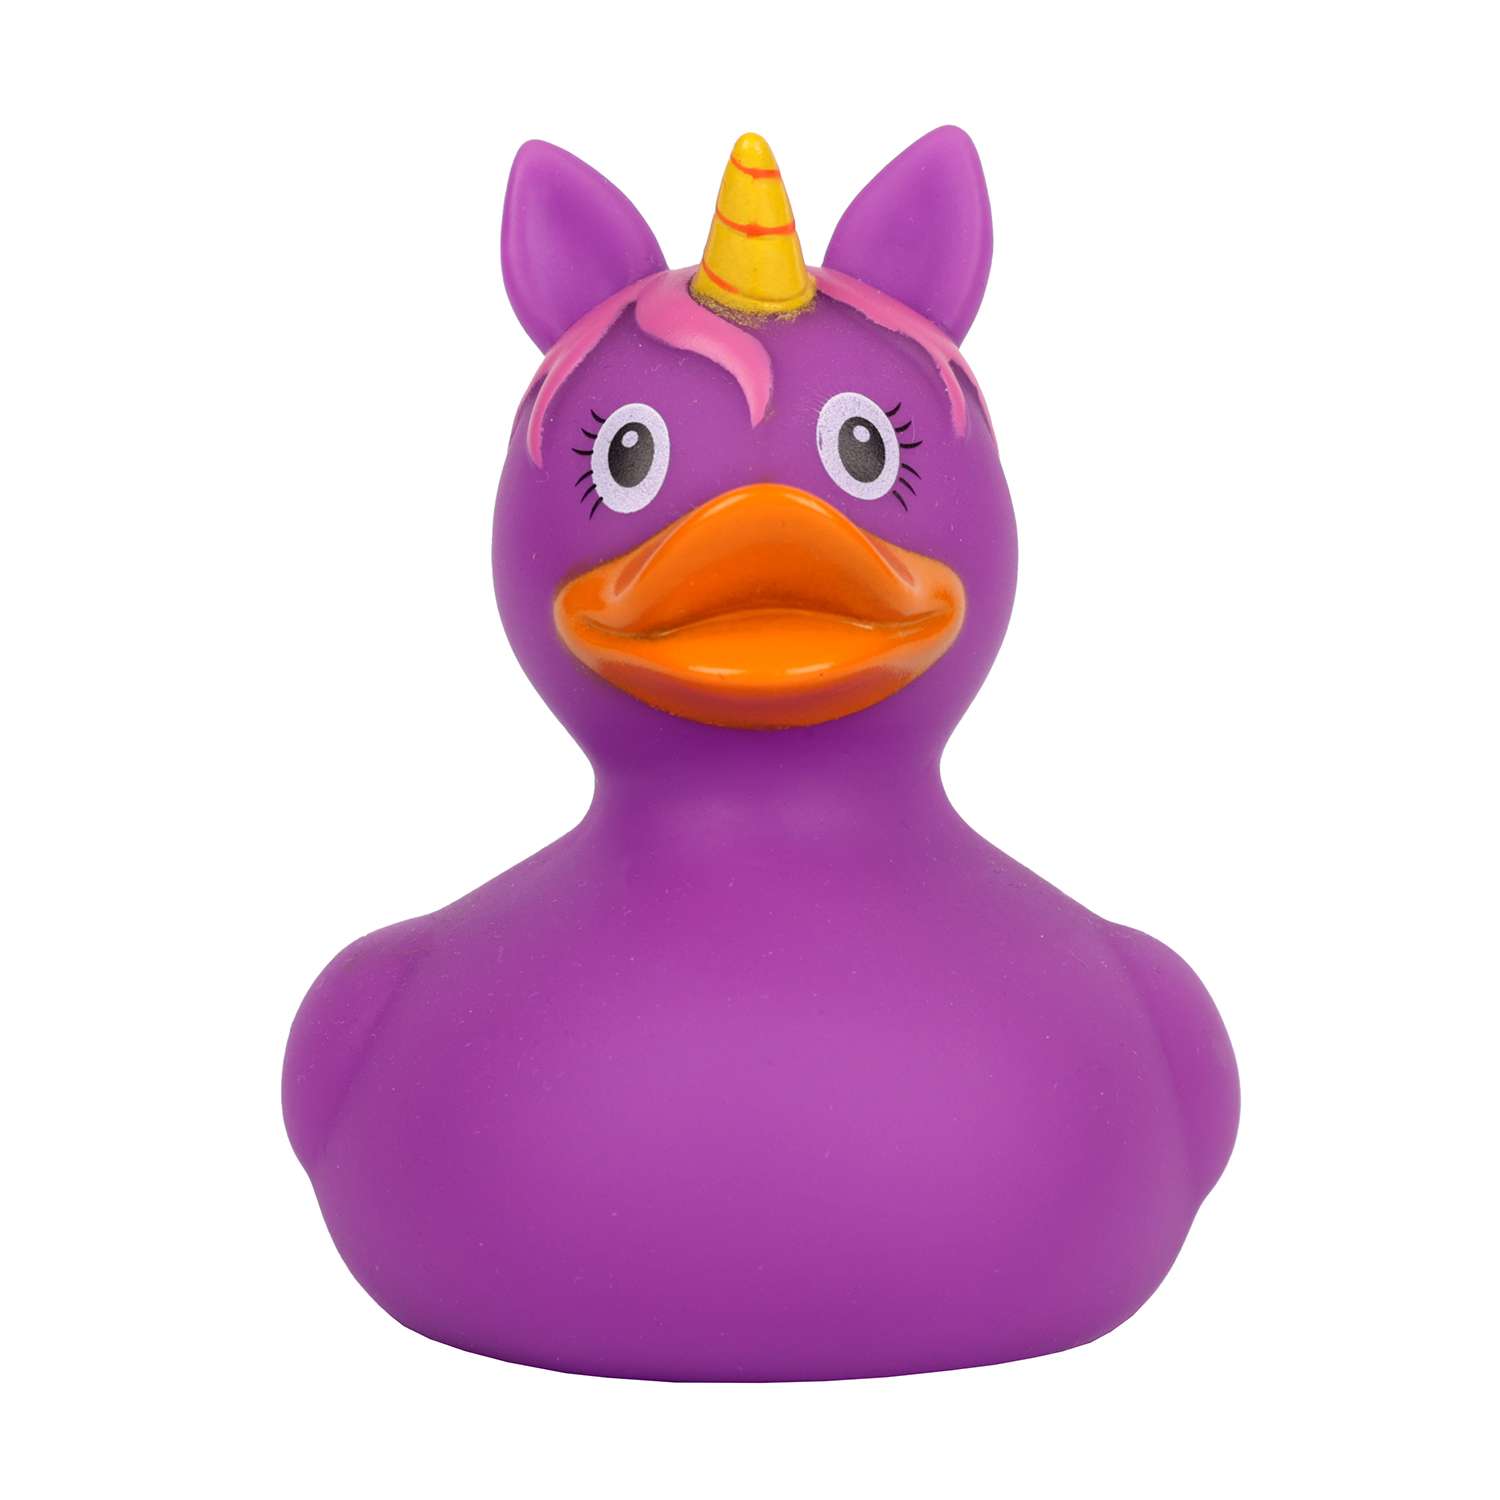 Игрушка для ванны сувенир Funny ducks Единорог пурпурный уточка 2090 - фото 2